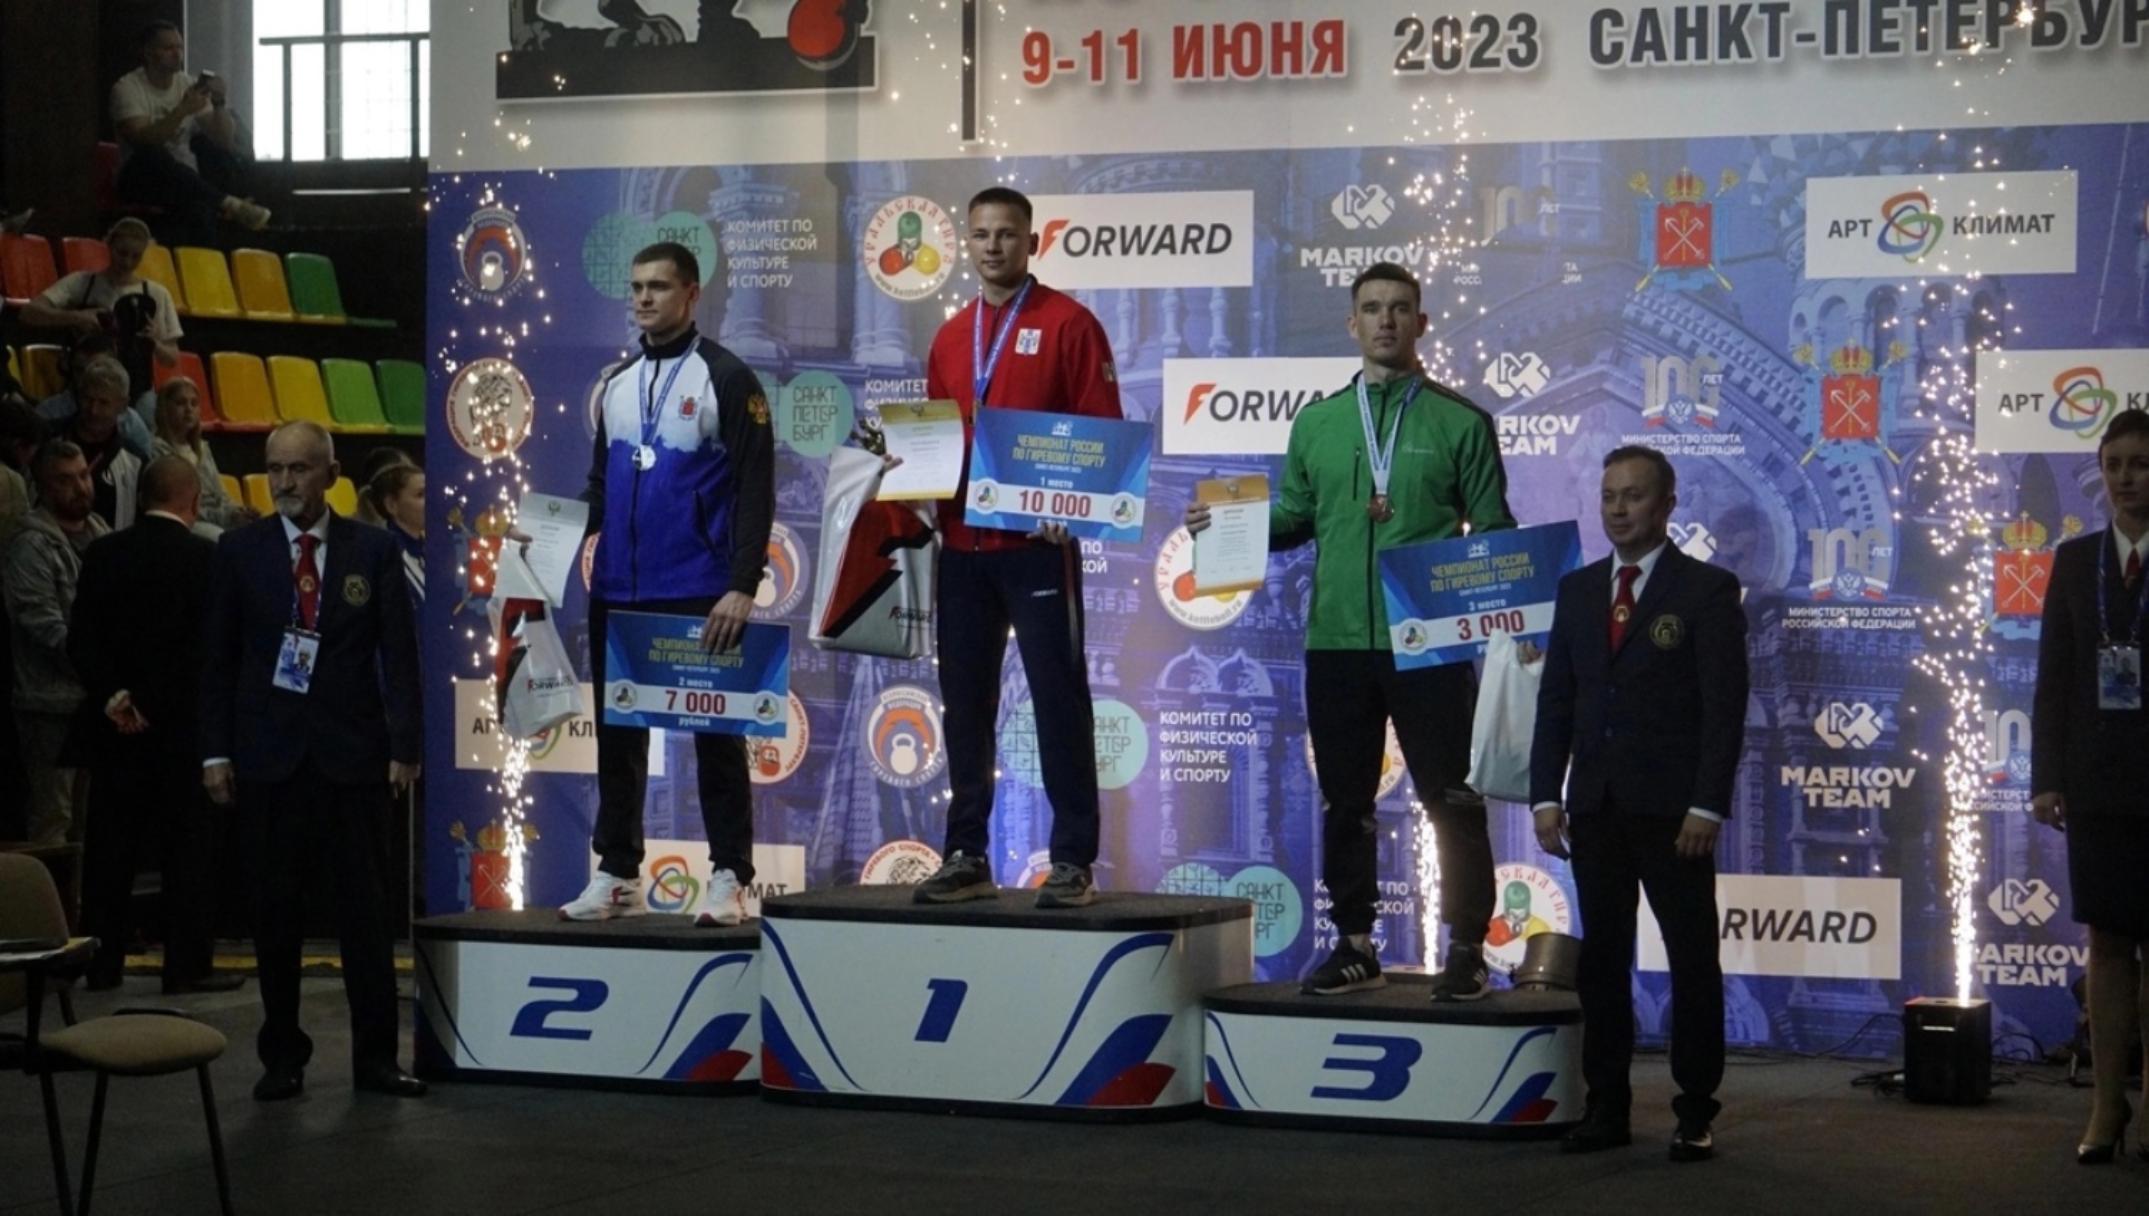 Аспирант КГУ завоевал медаль на чемпионате России по гиревому спорту